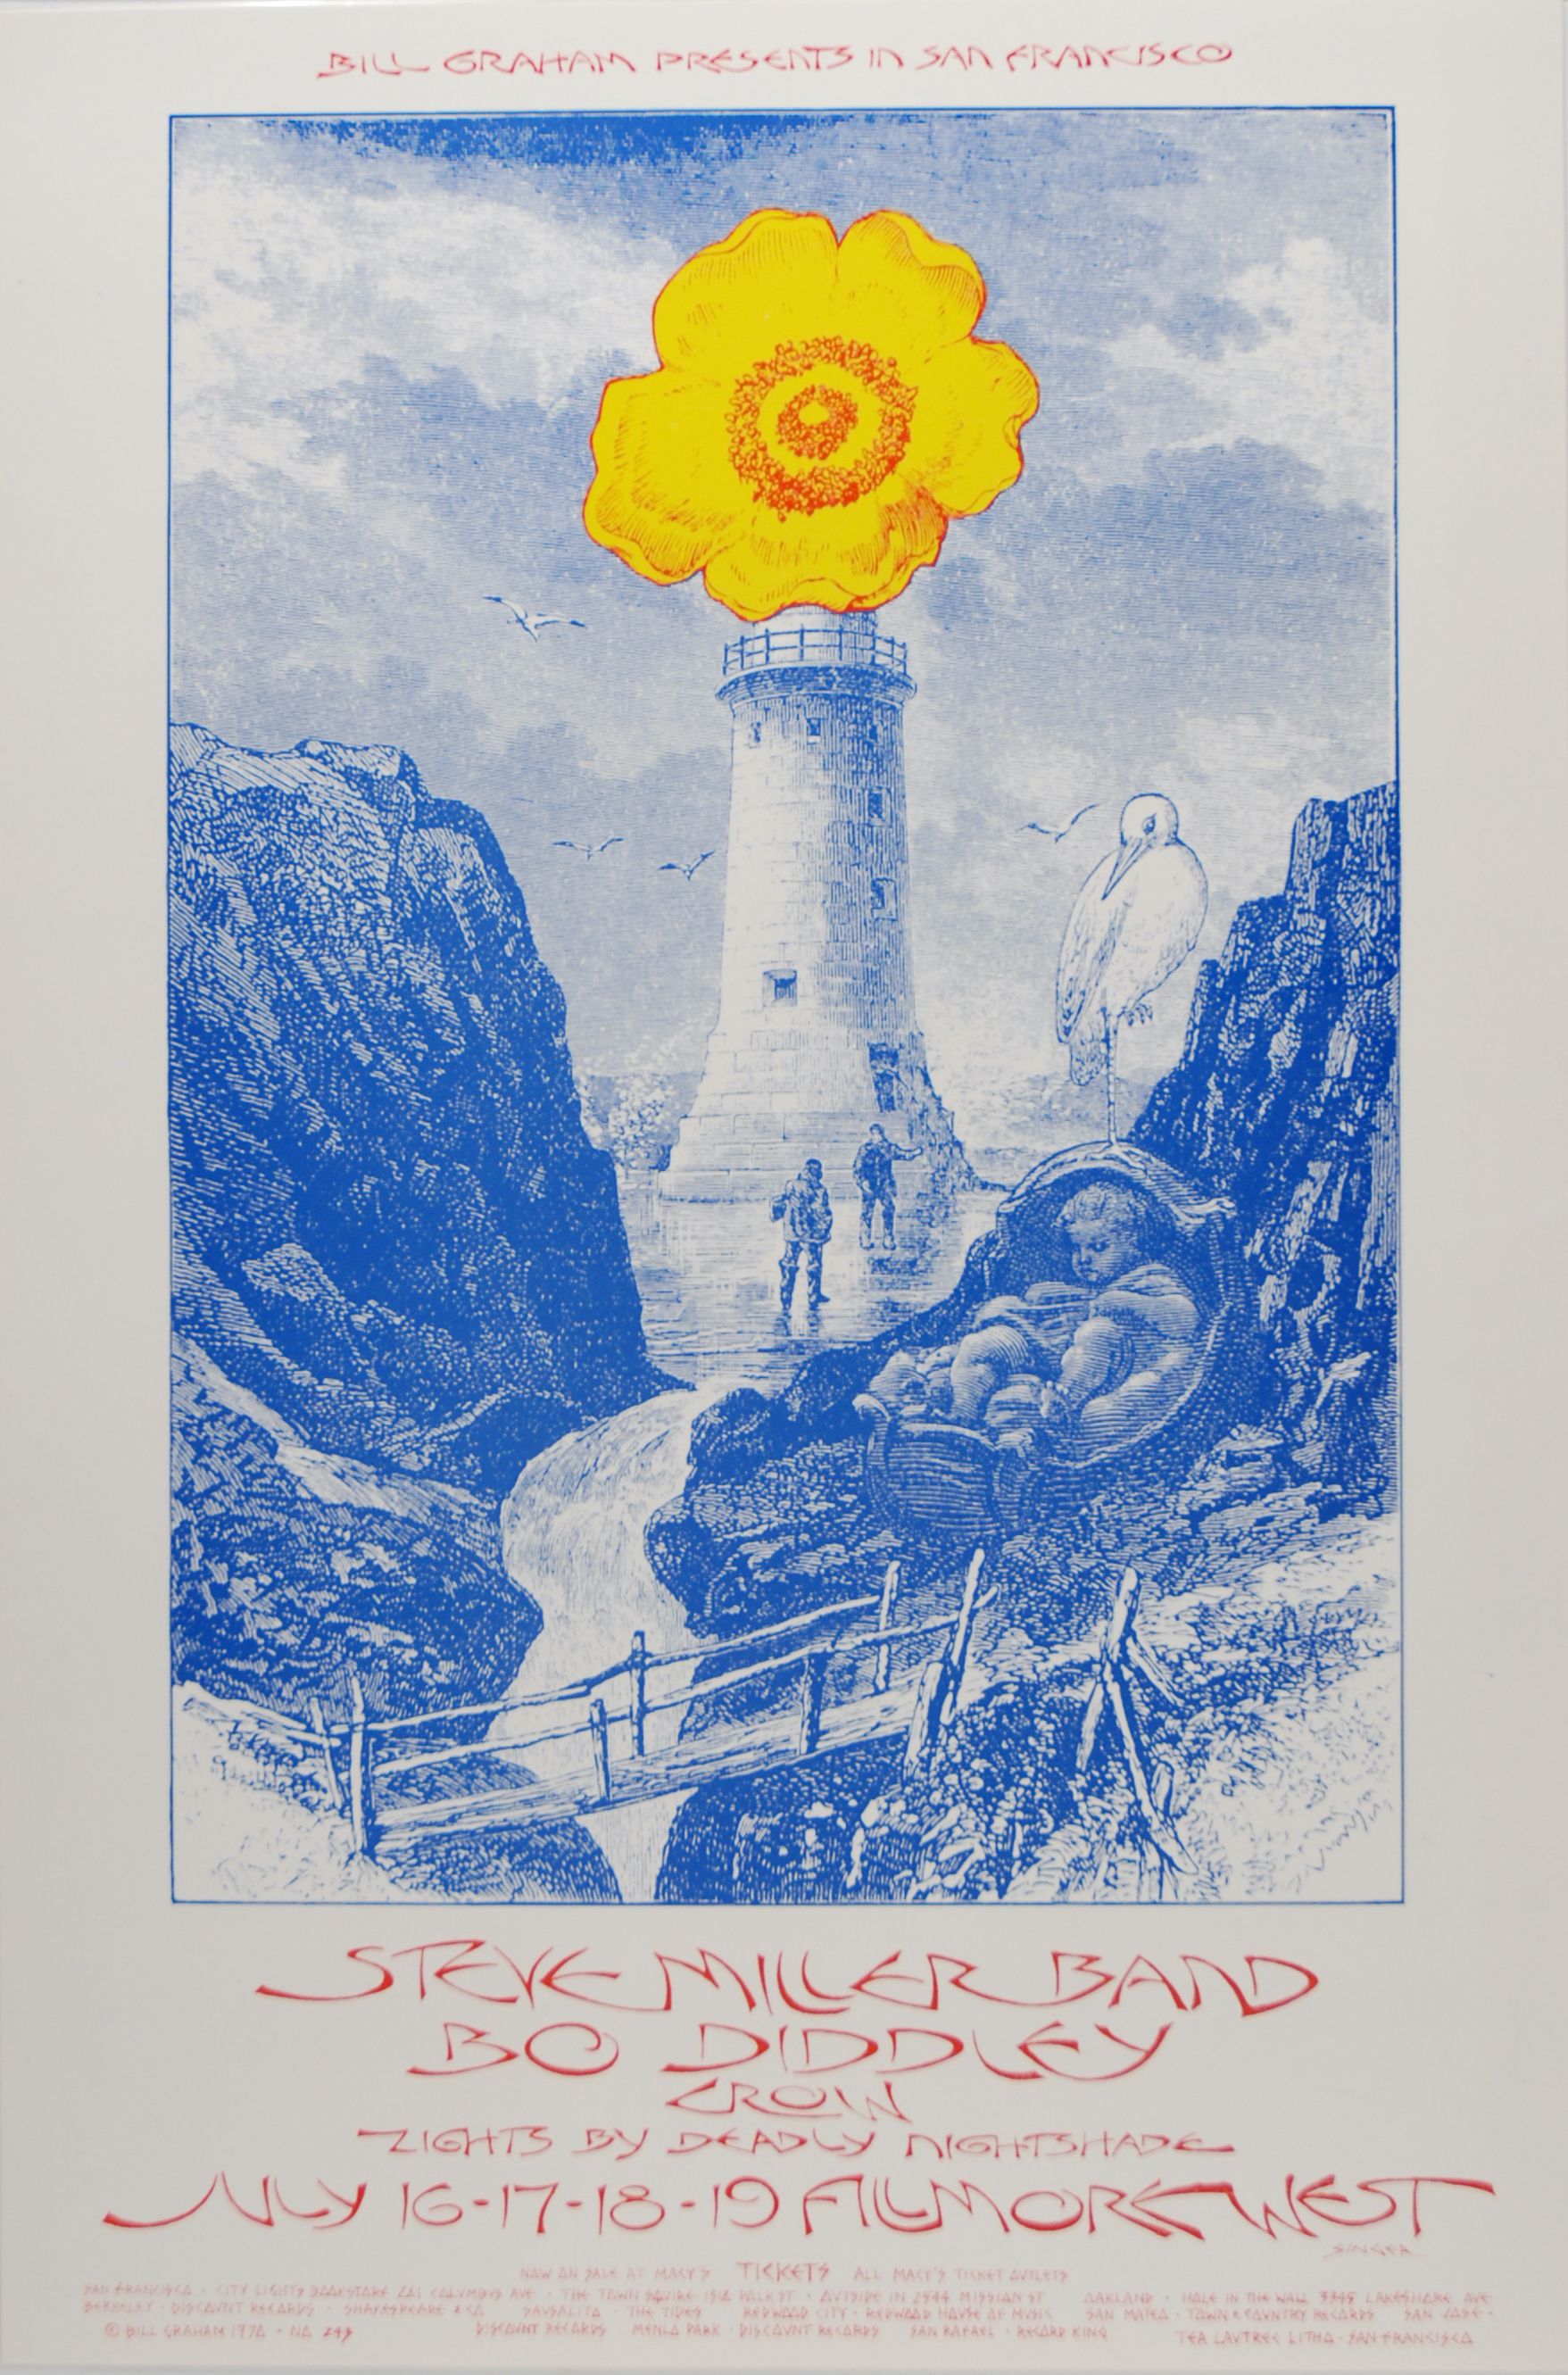 BG-243-OP-1 Concert Poster